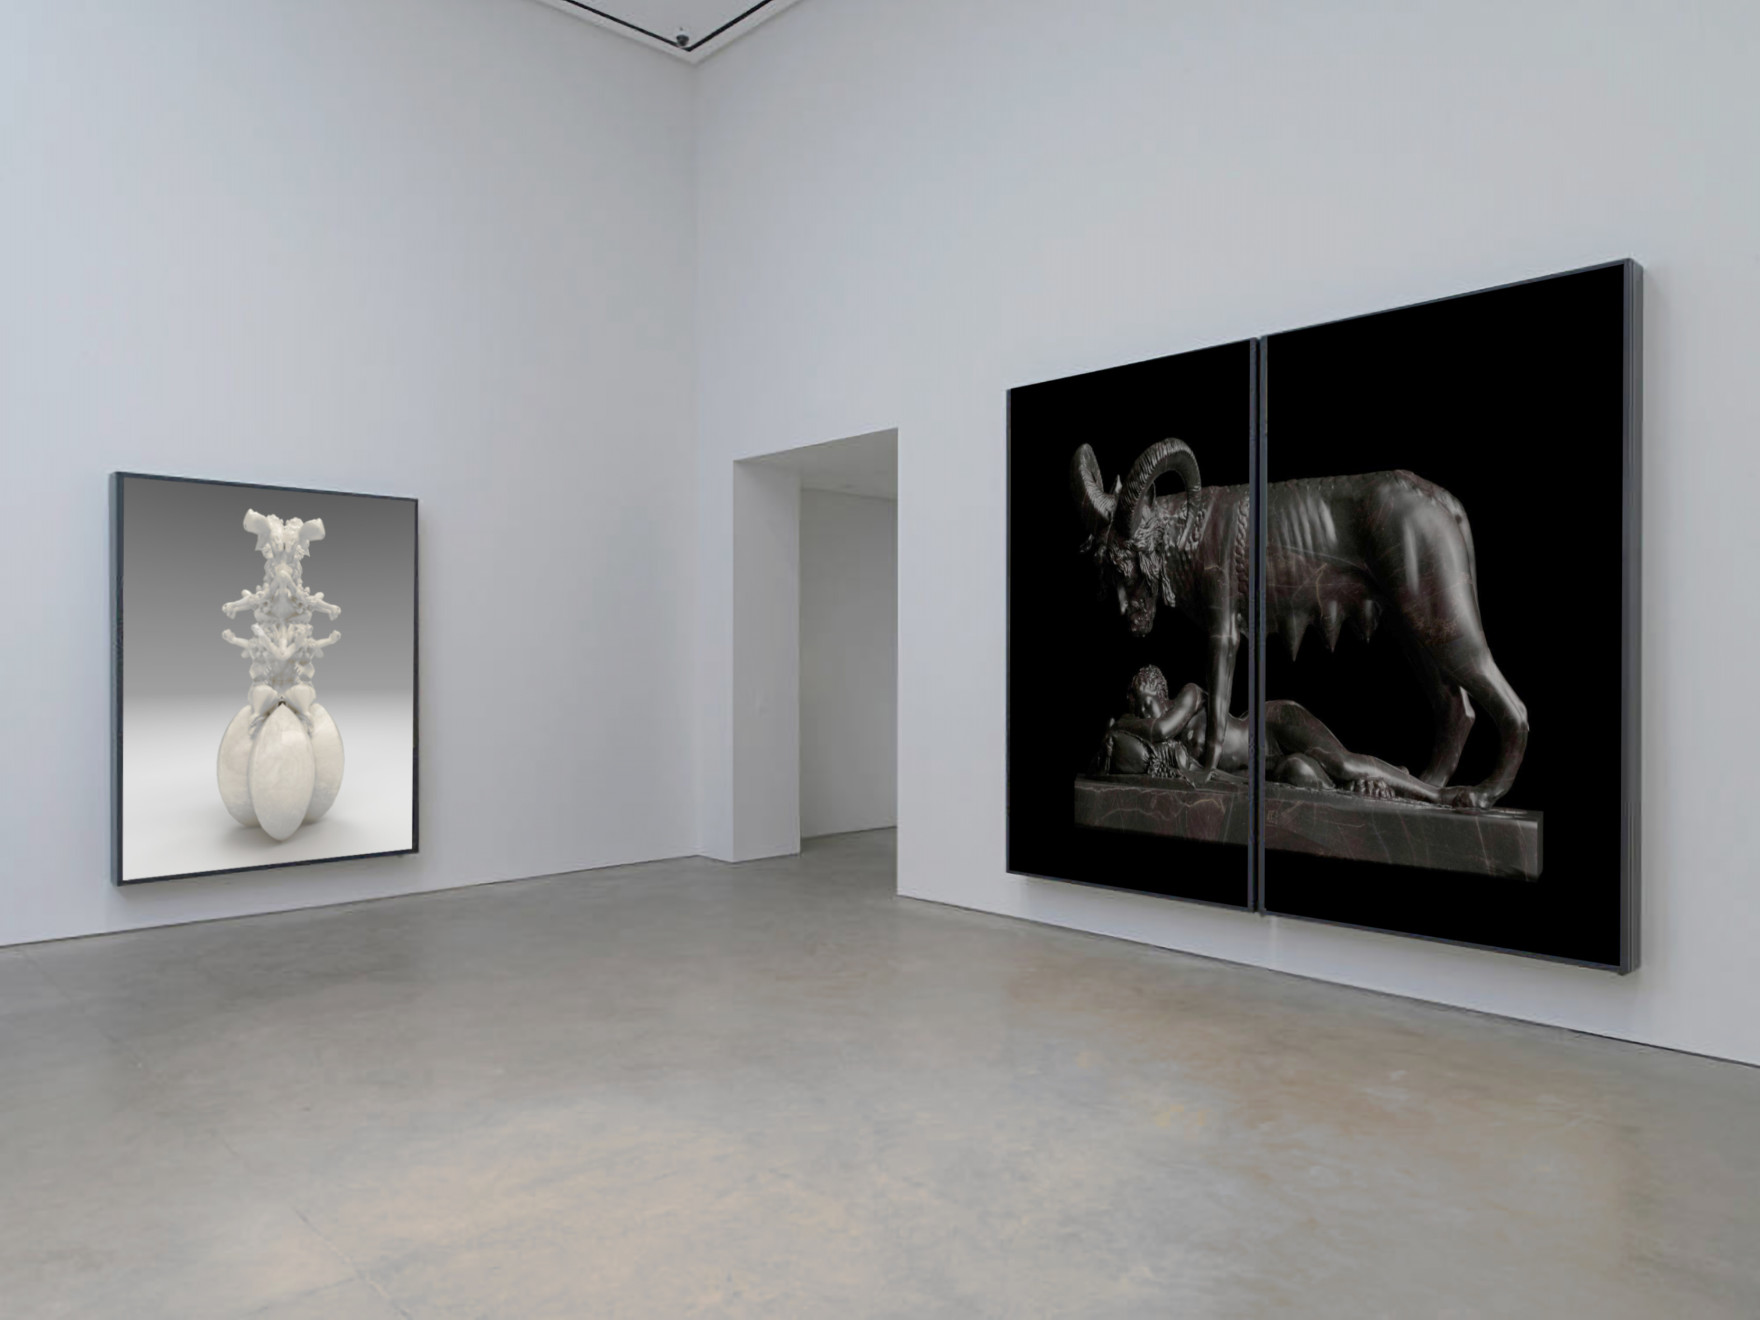 Wolfe von Lenkiewicz, Capitoline Wolf Installation, 2021